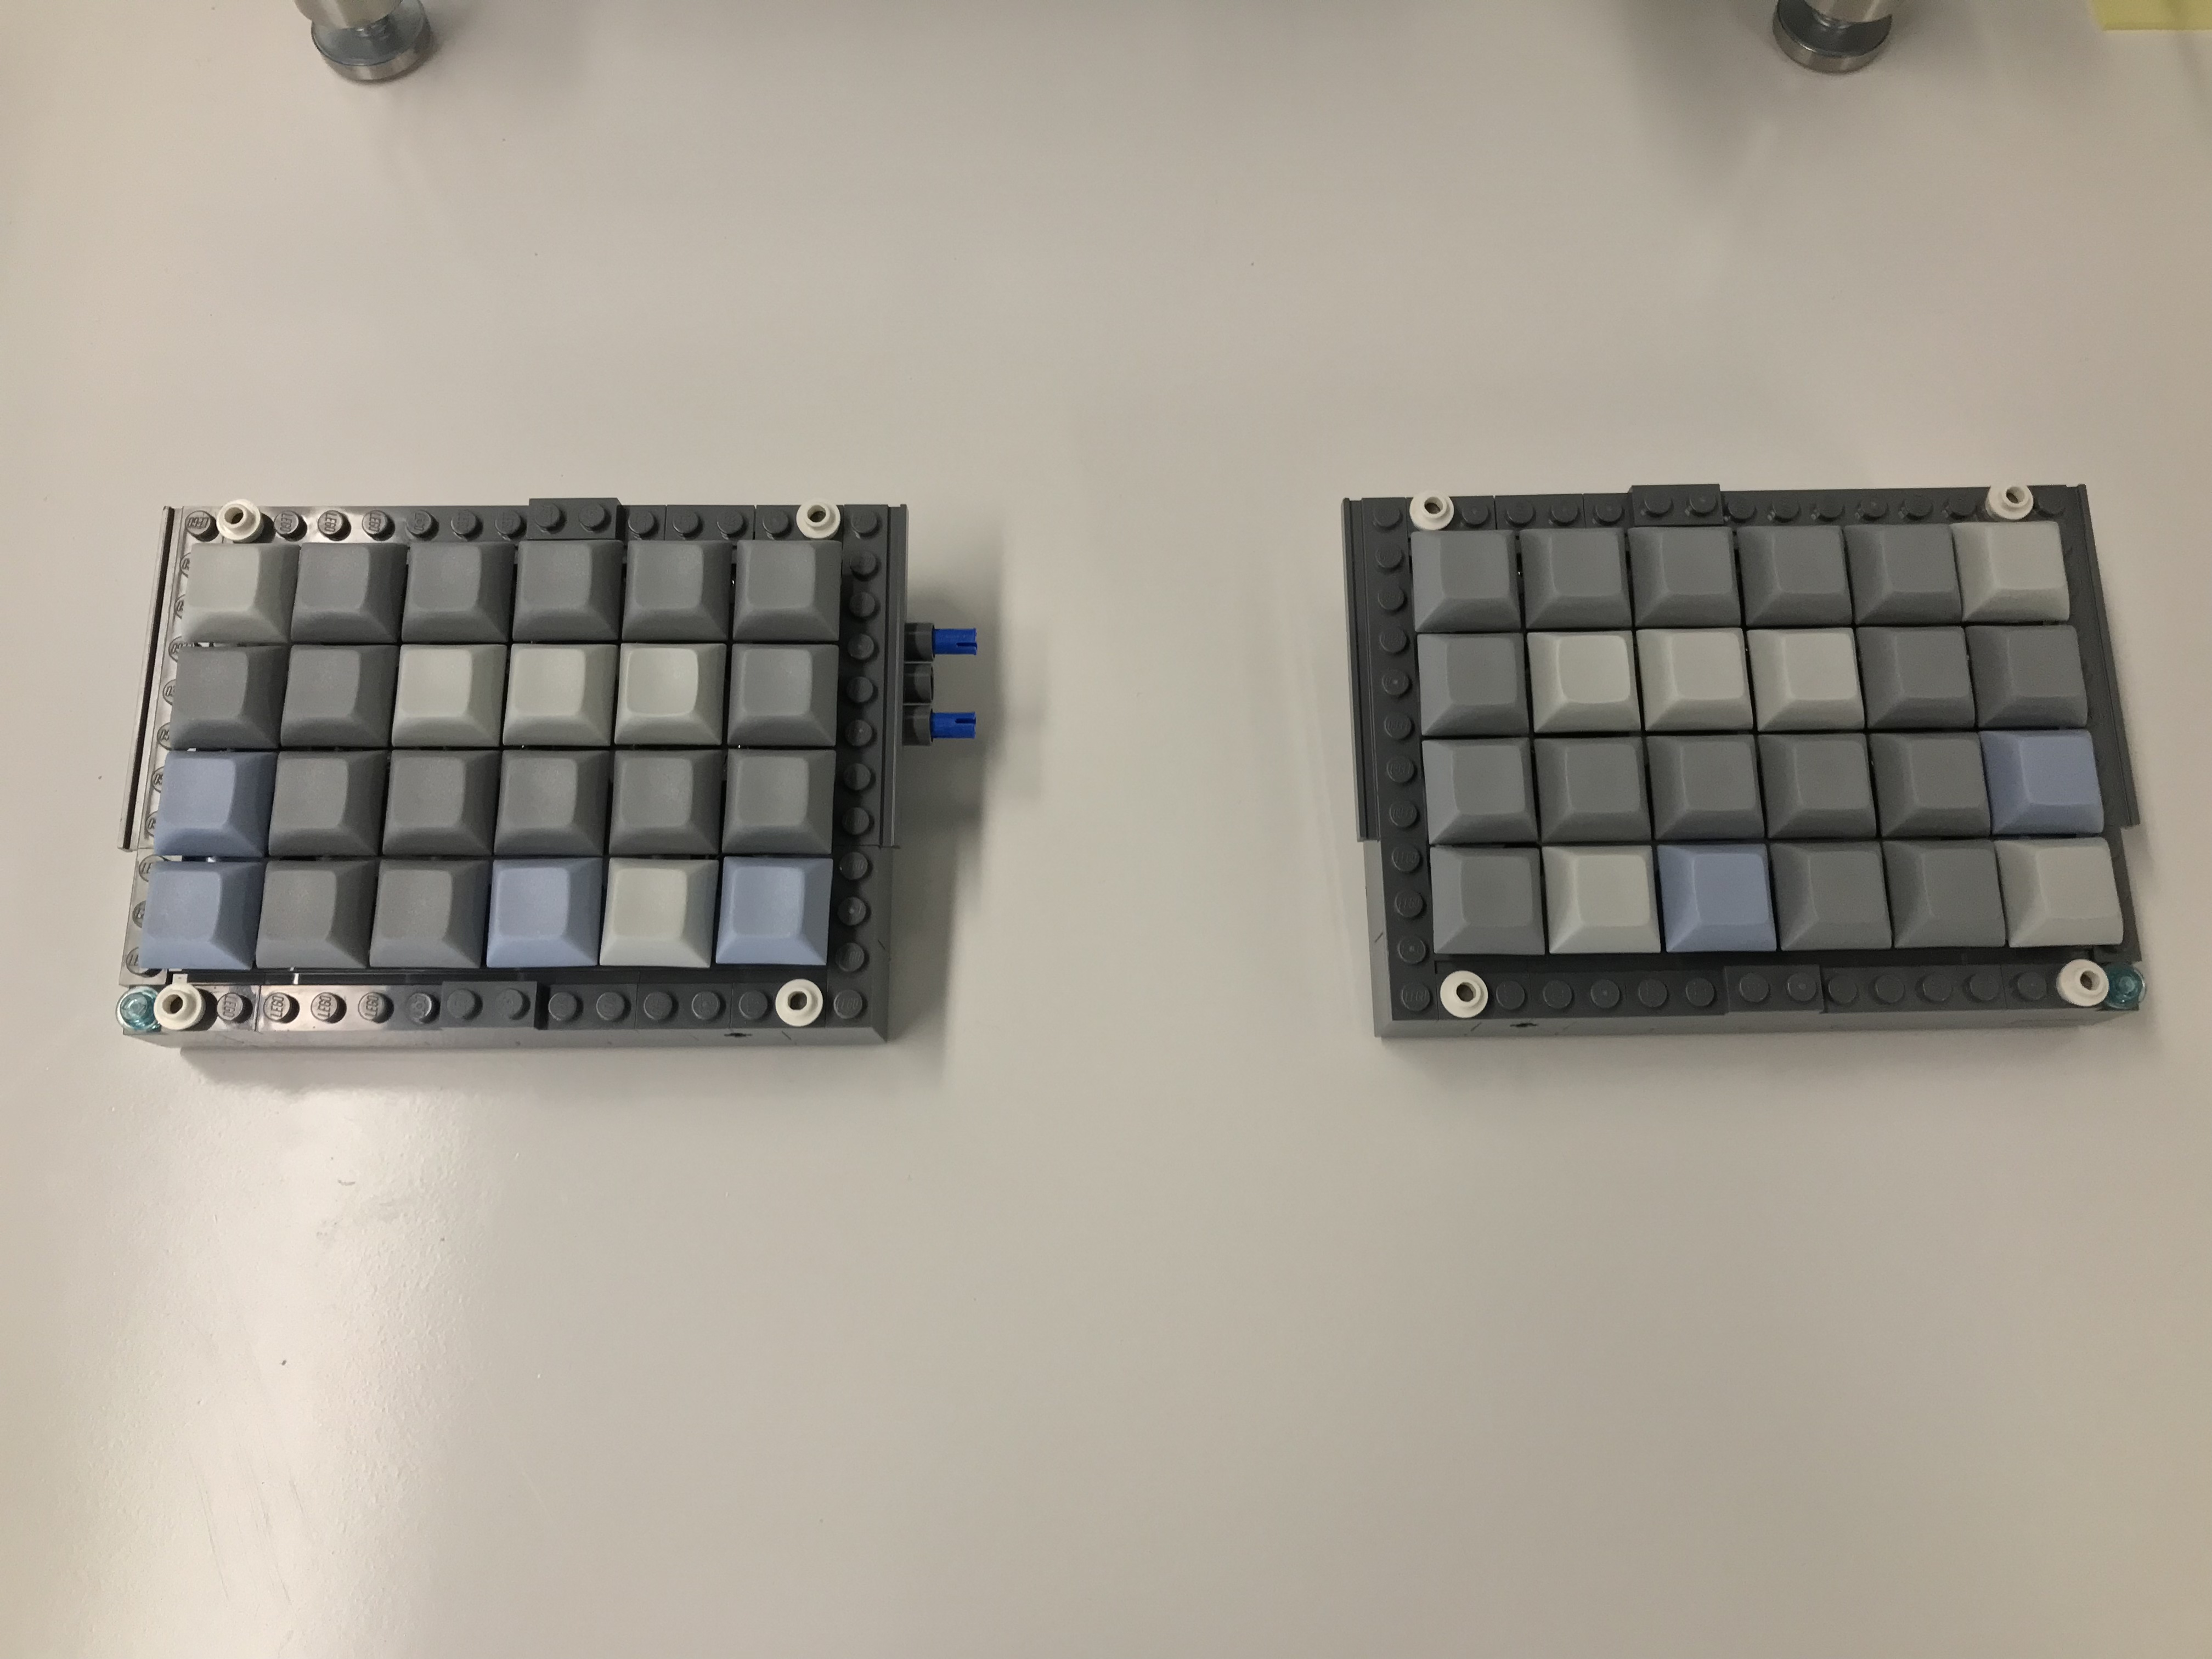 Lego Let's Split Keyboard